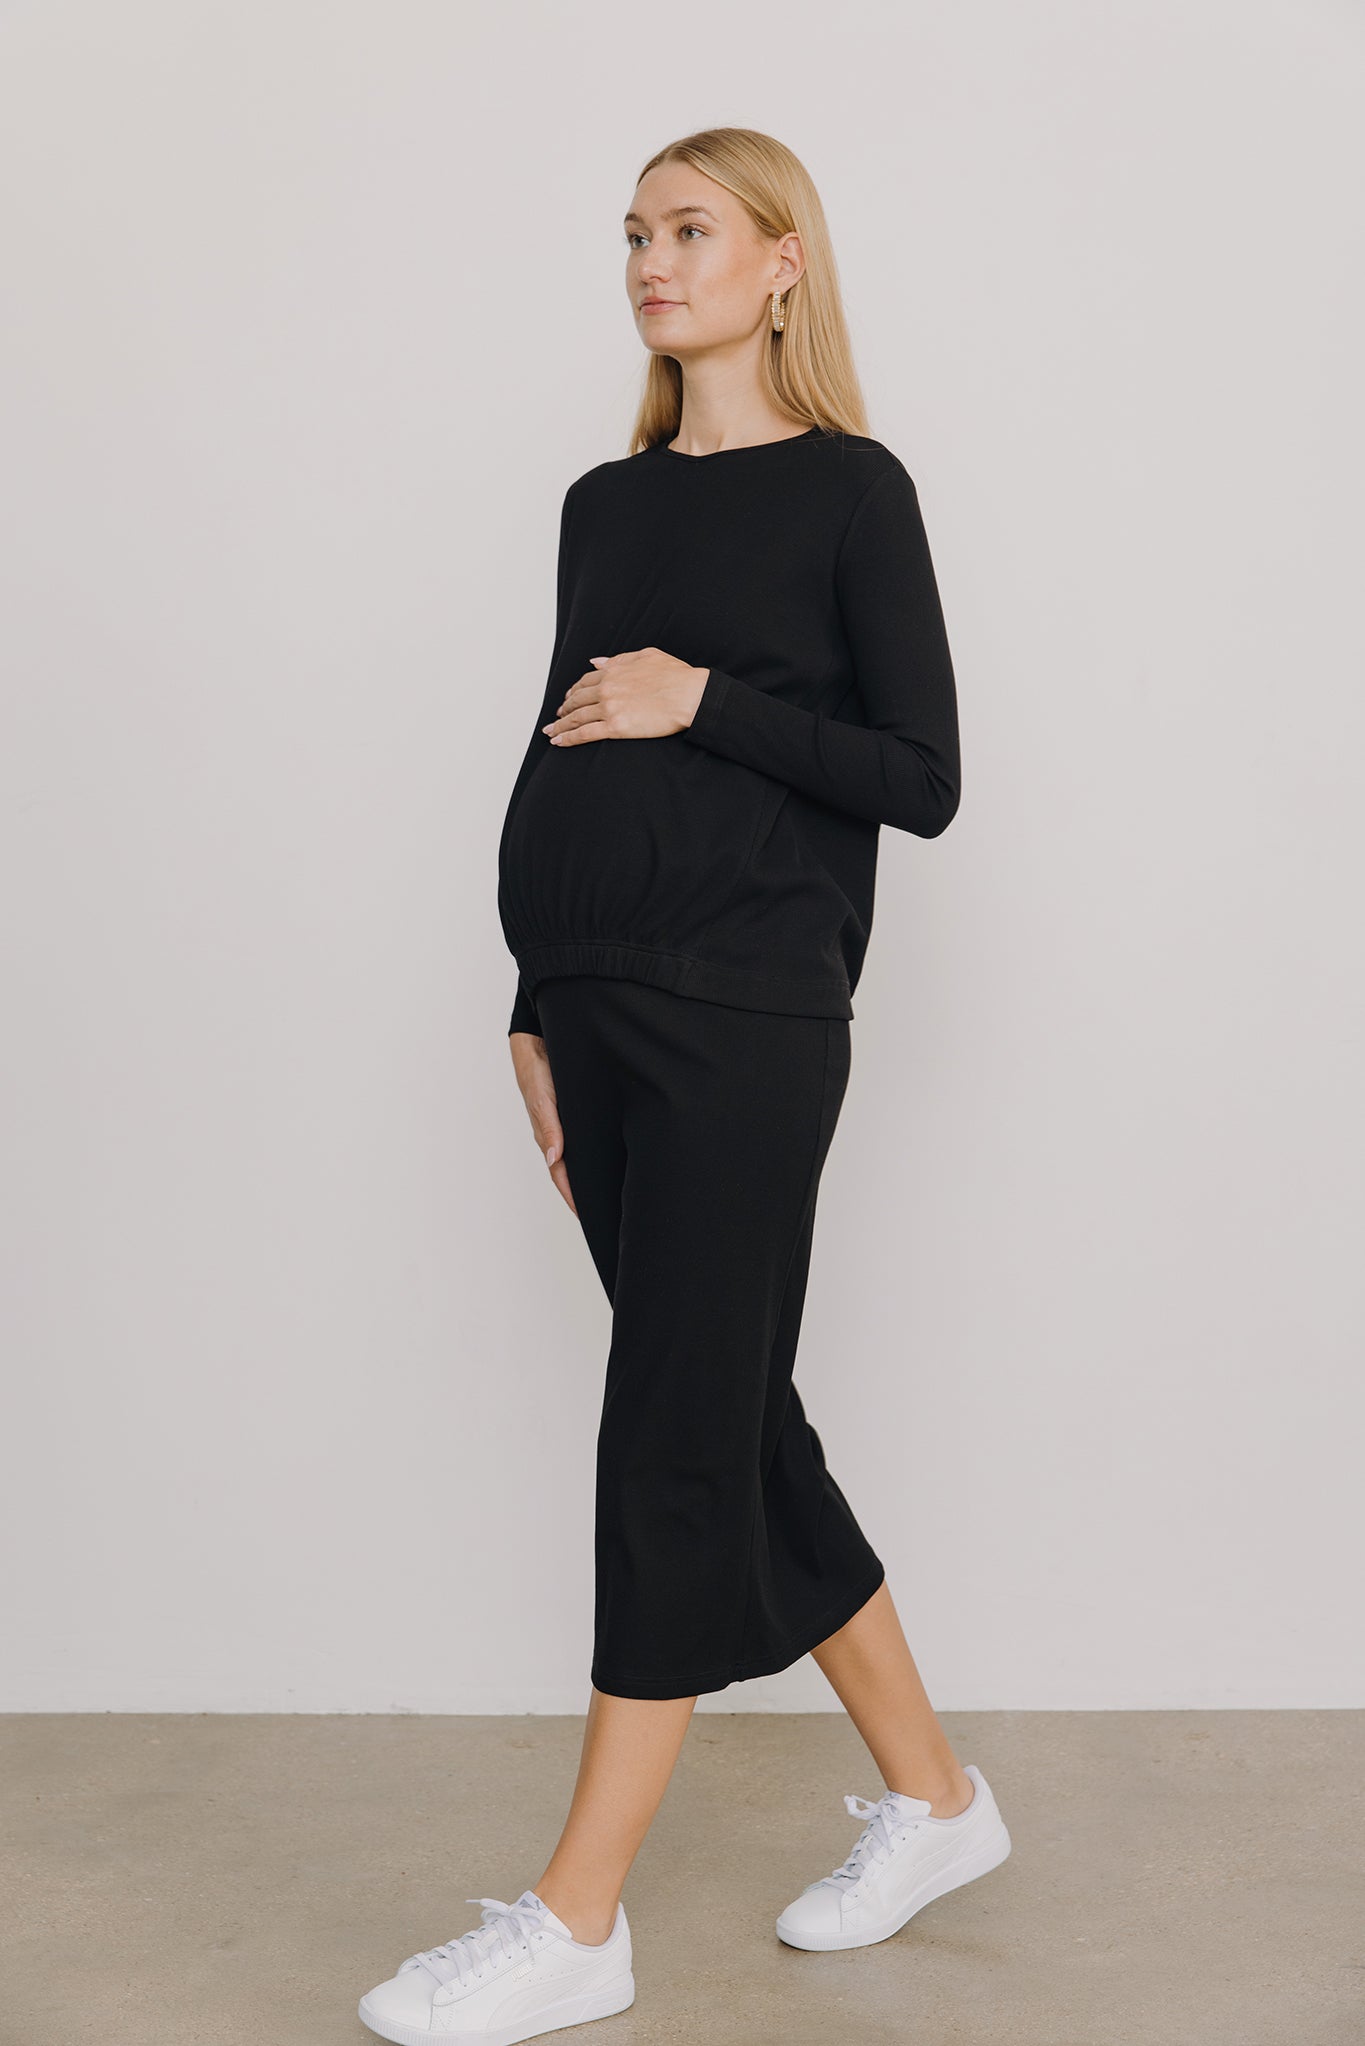 Sapphire Maternity Skirt in Black